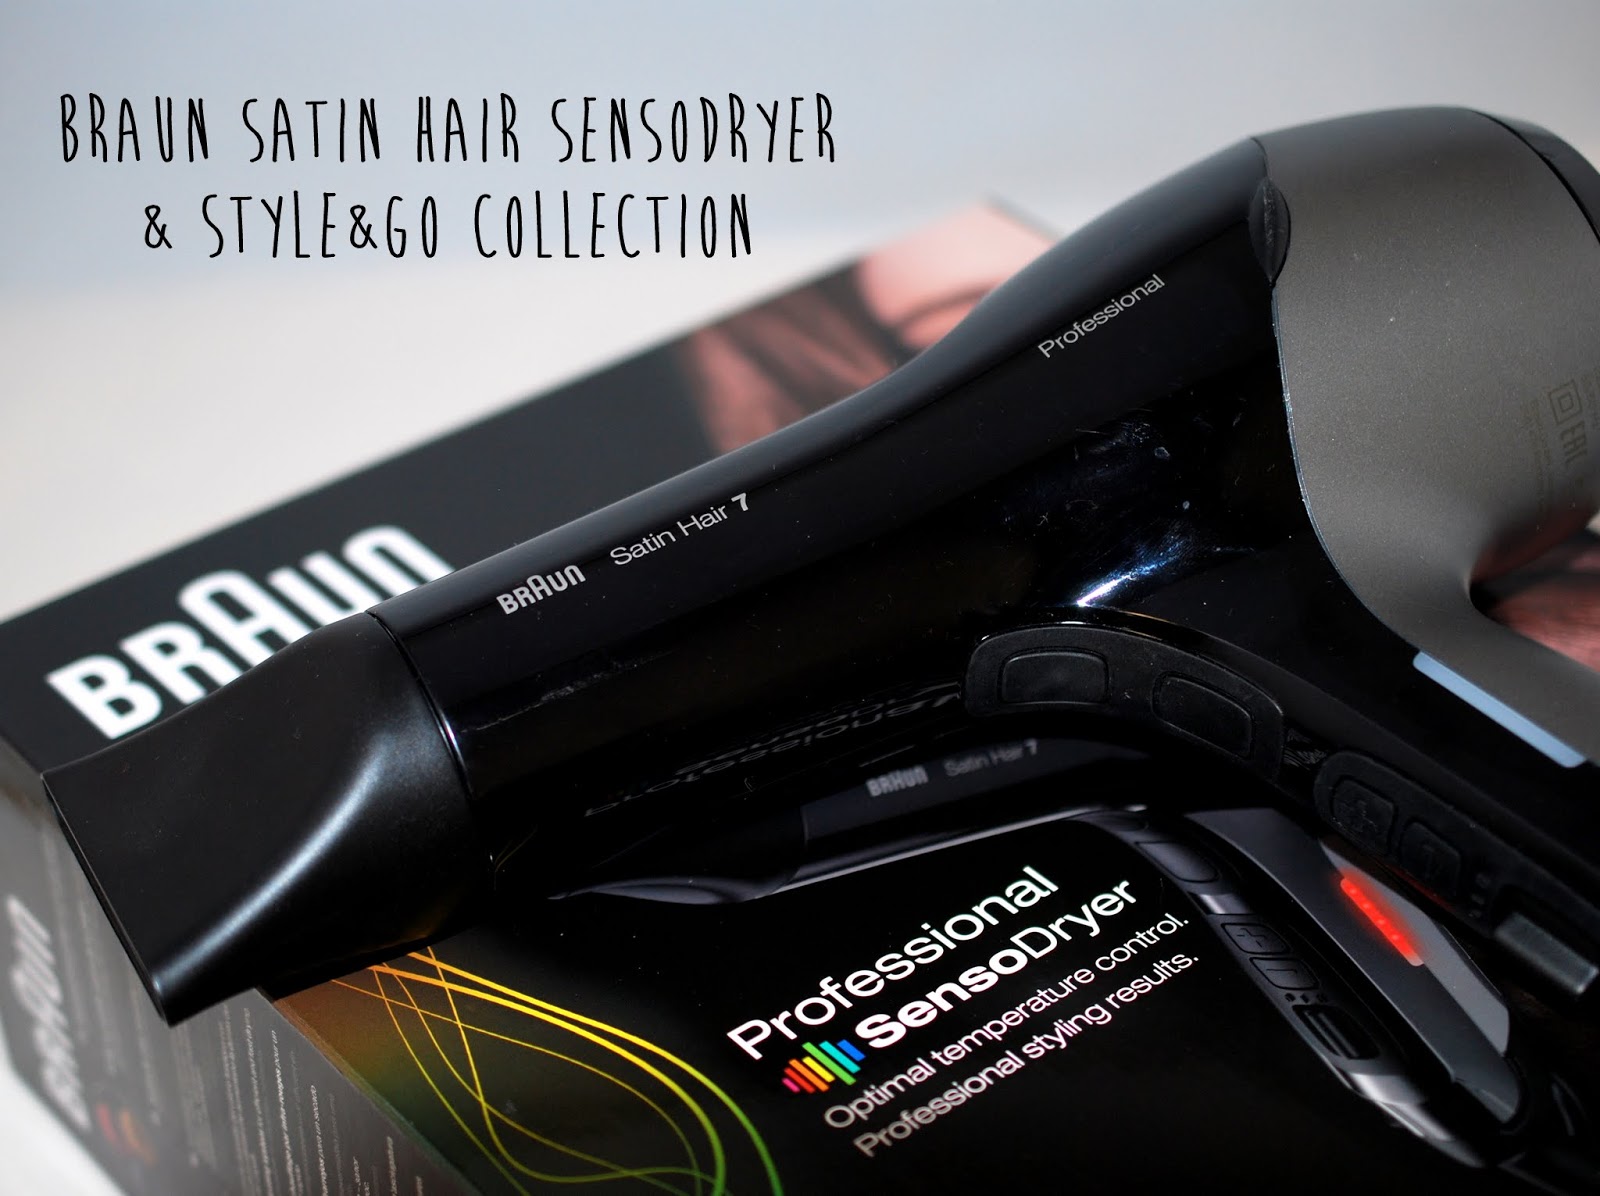 Haarpflege} Style&Go Collection und Satin Hair 7 Professional SensoDryer  von Braun (Sponsored) - I need sunshine